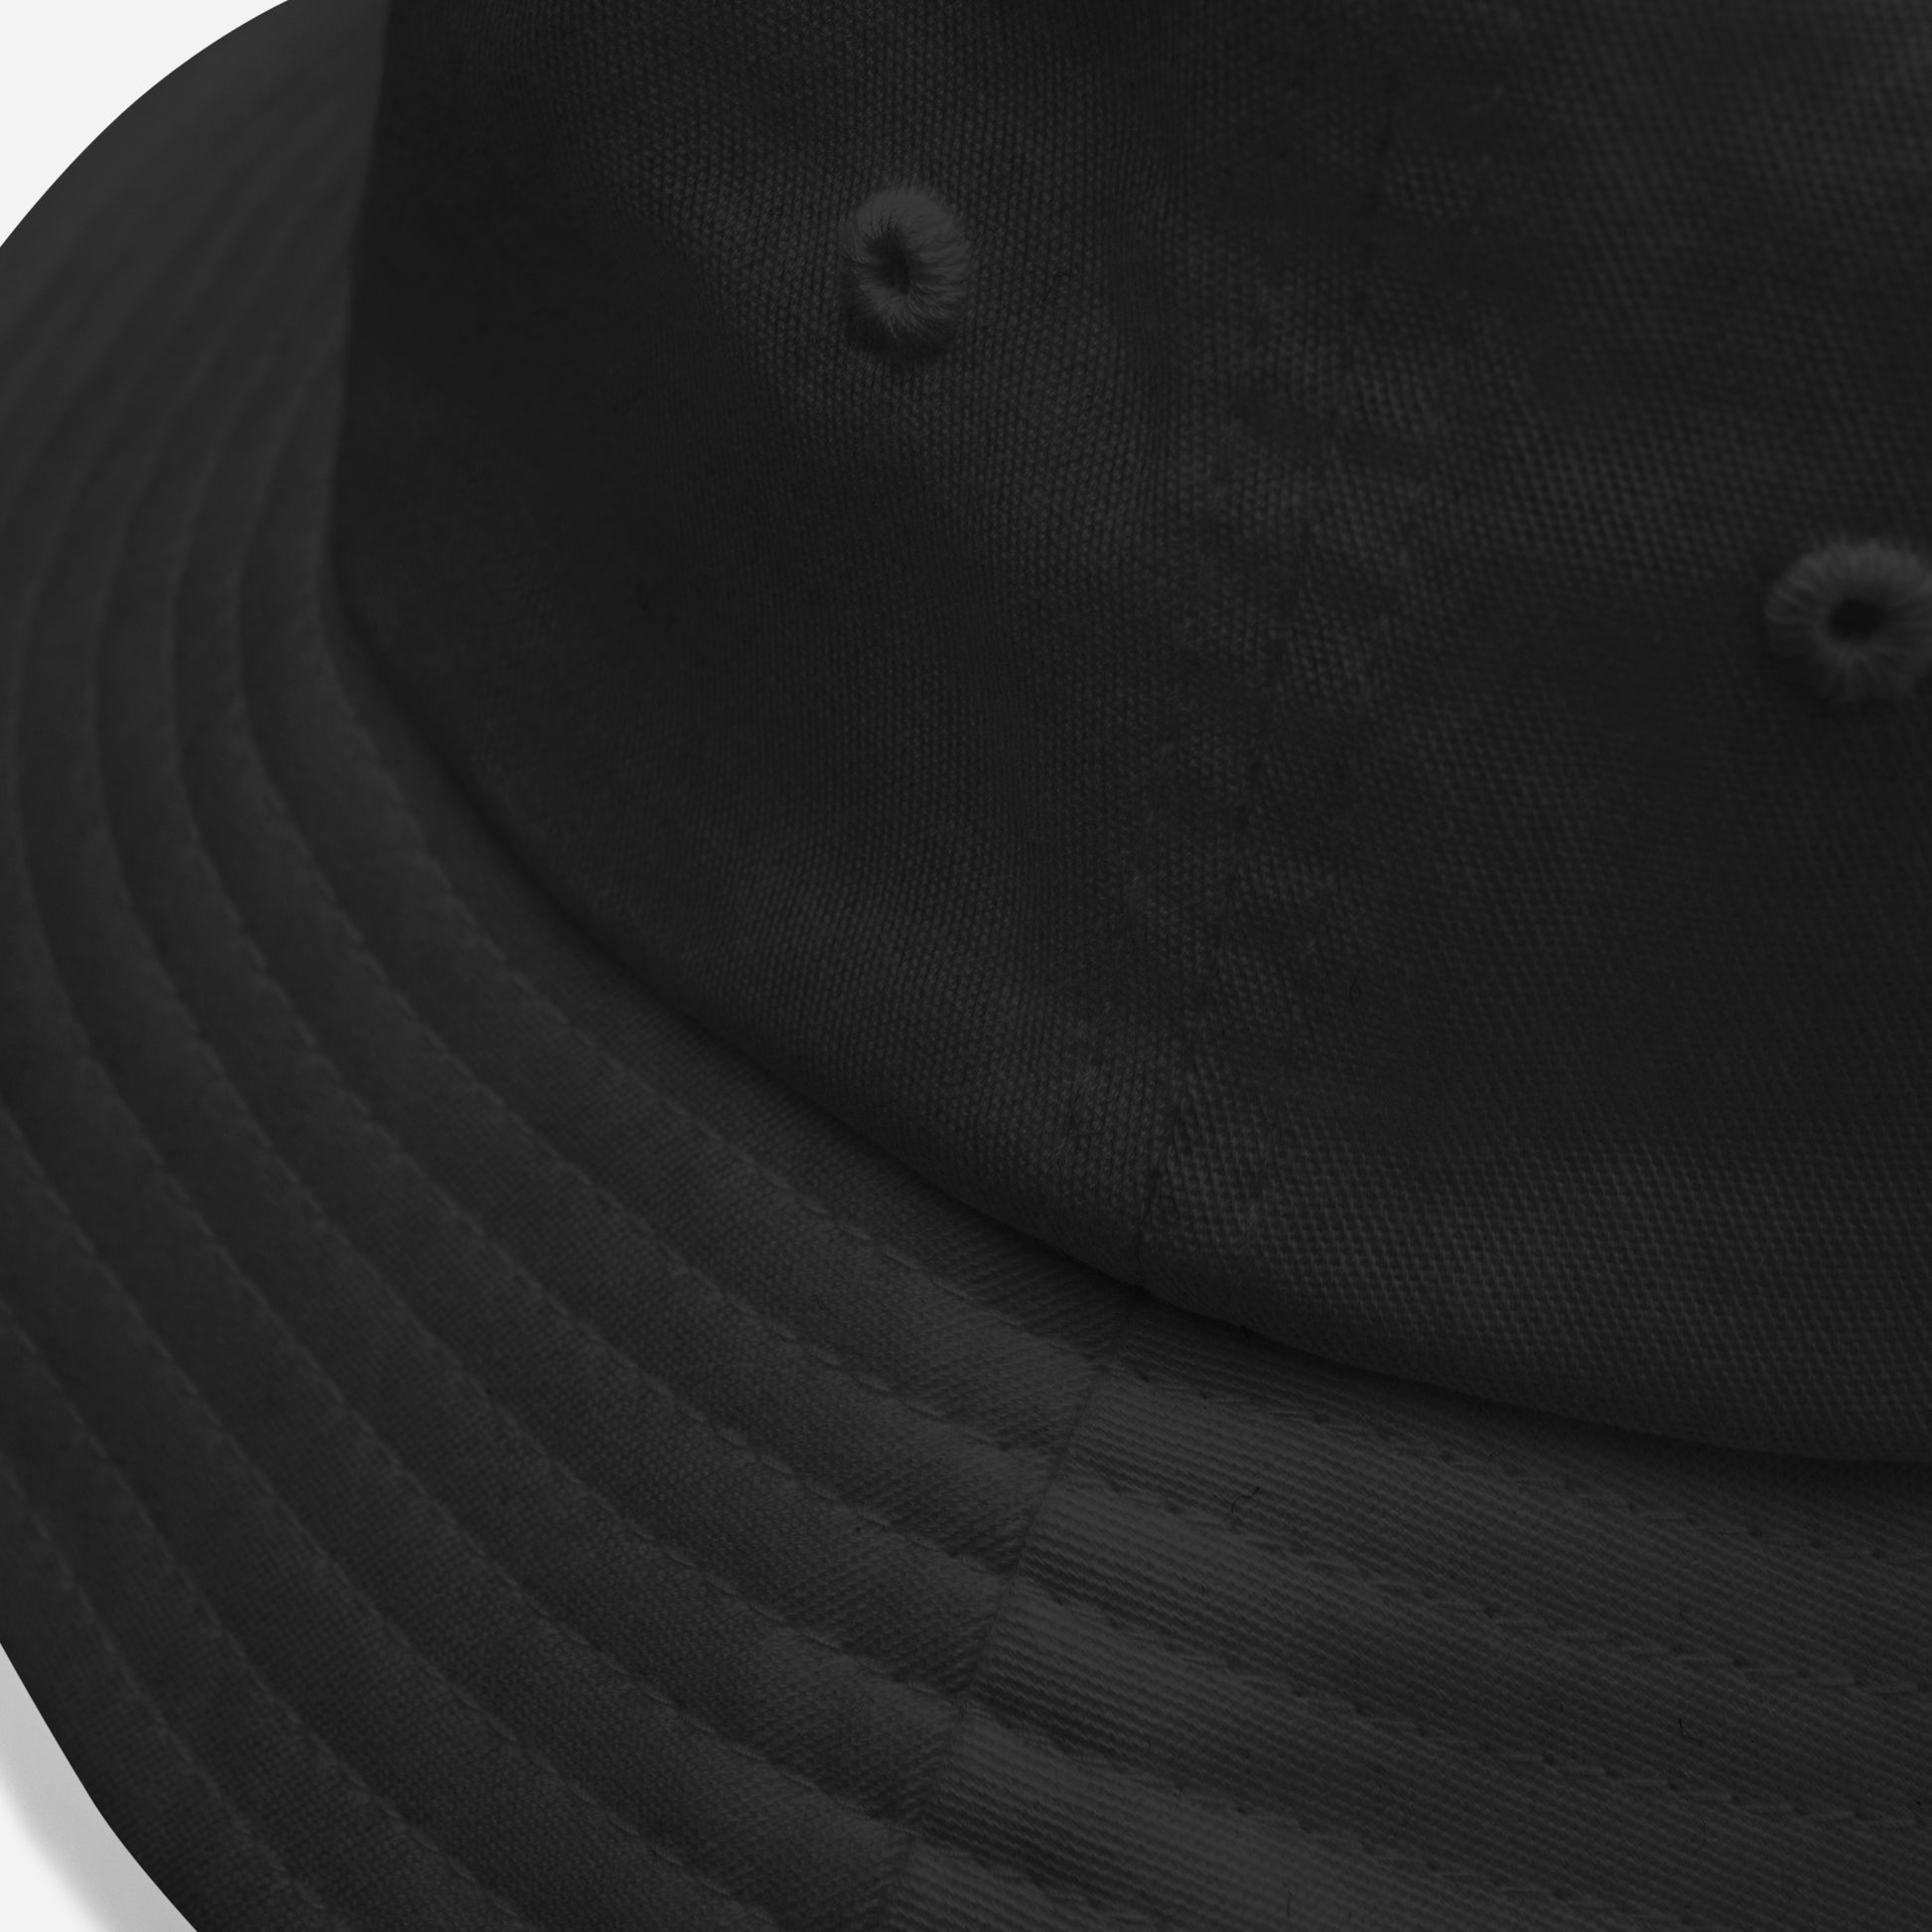 detail closeup on black Ka Manō Vintage Embroidered Bucket Hat